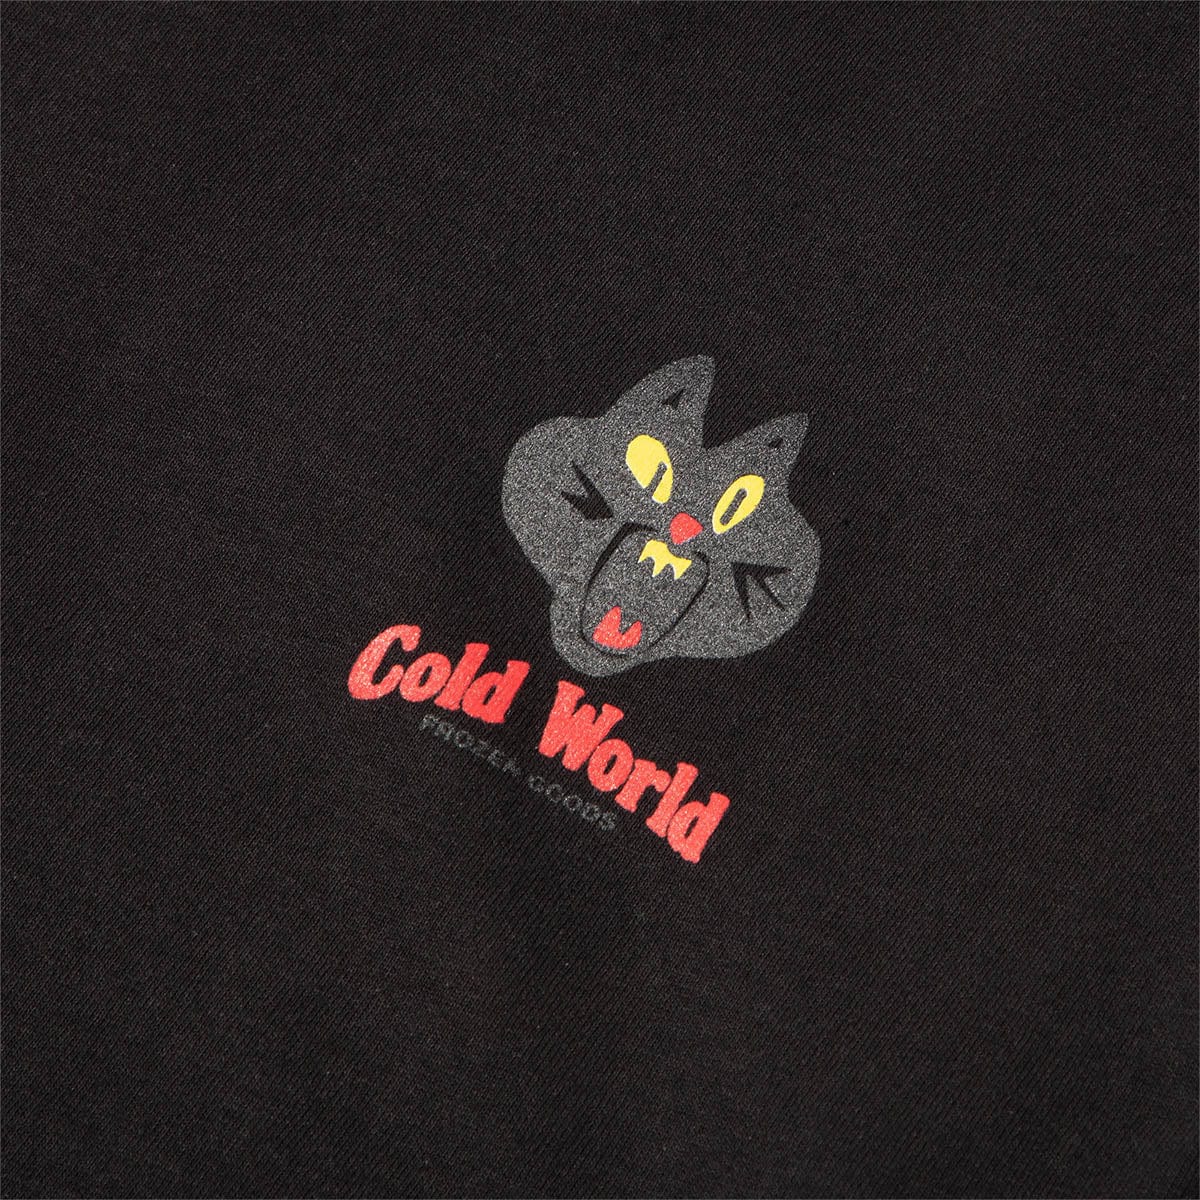 Cold World Frozen Goods T-Shirts JAZZ CAT T-SHIRT